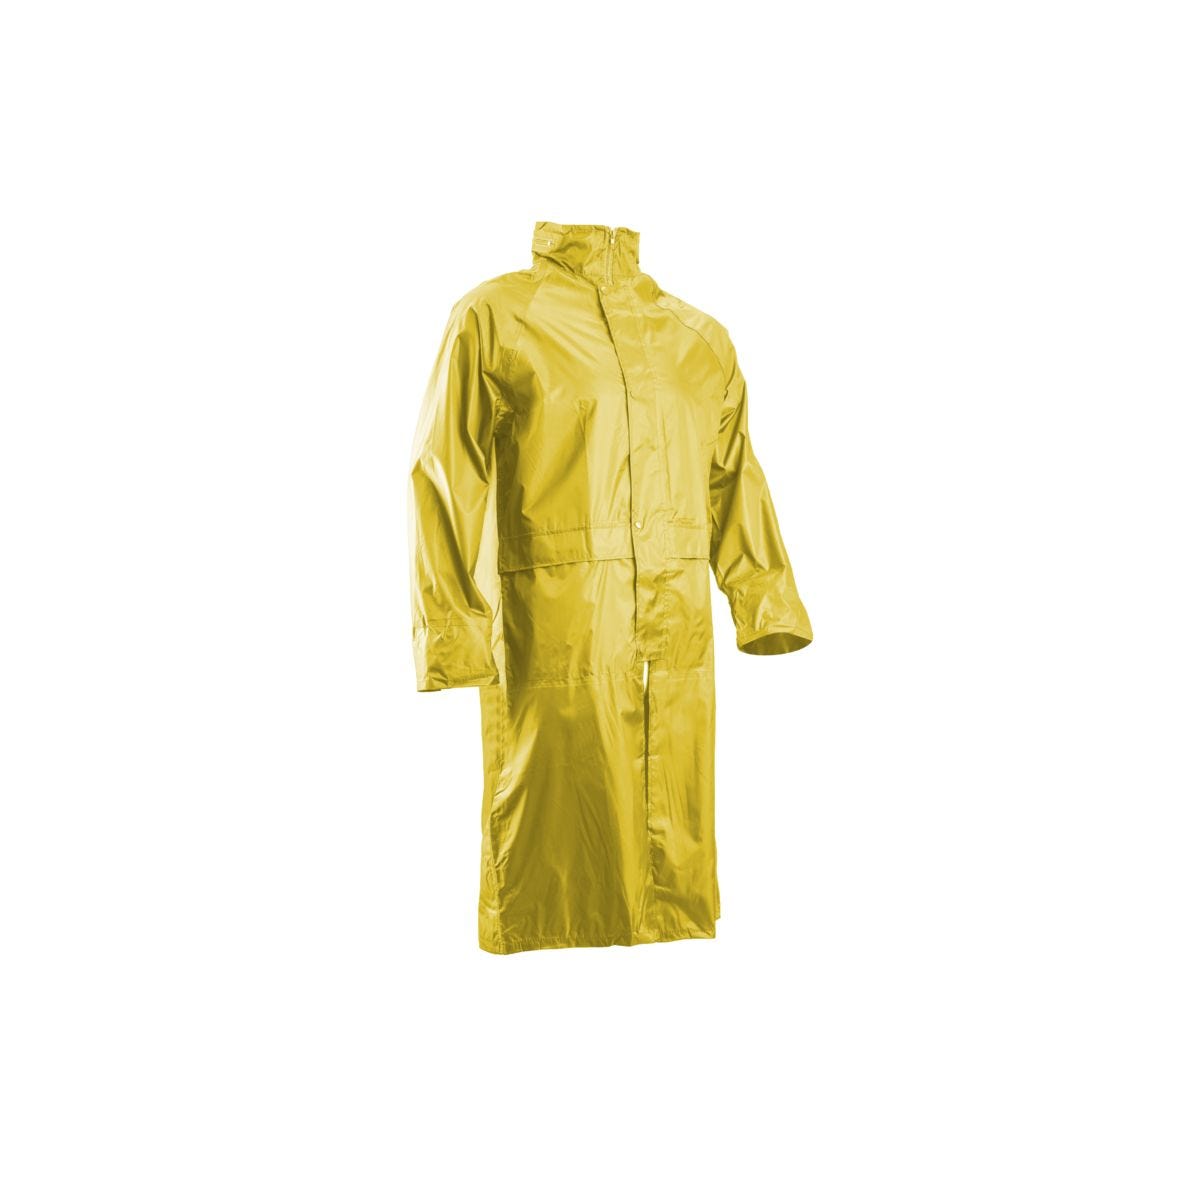 Manteau de pluie PVC, jaune, 185g/m² - COVERGUARD - Taille XL 0